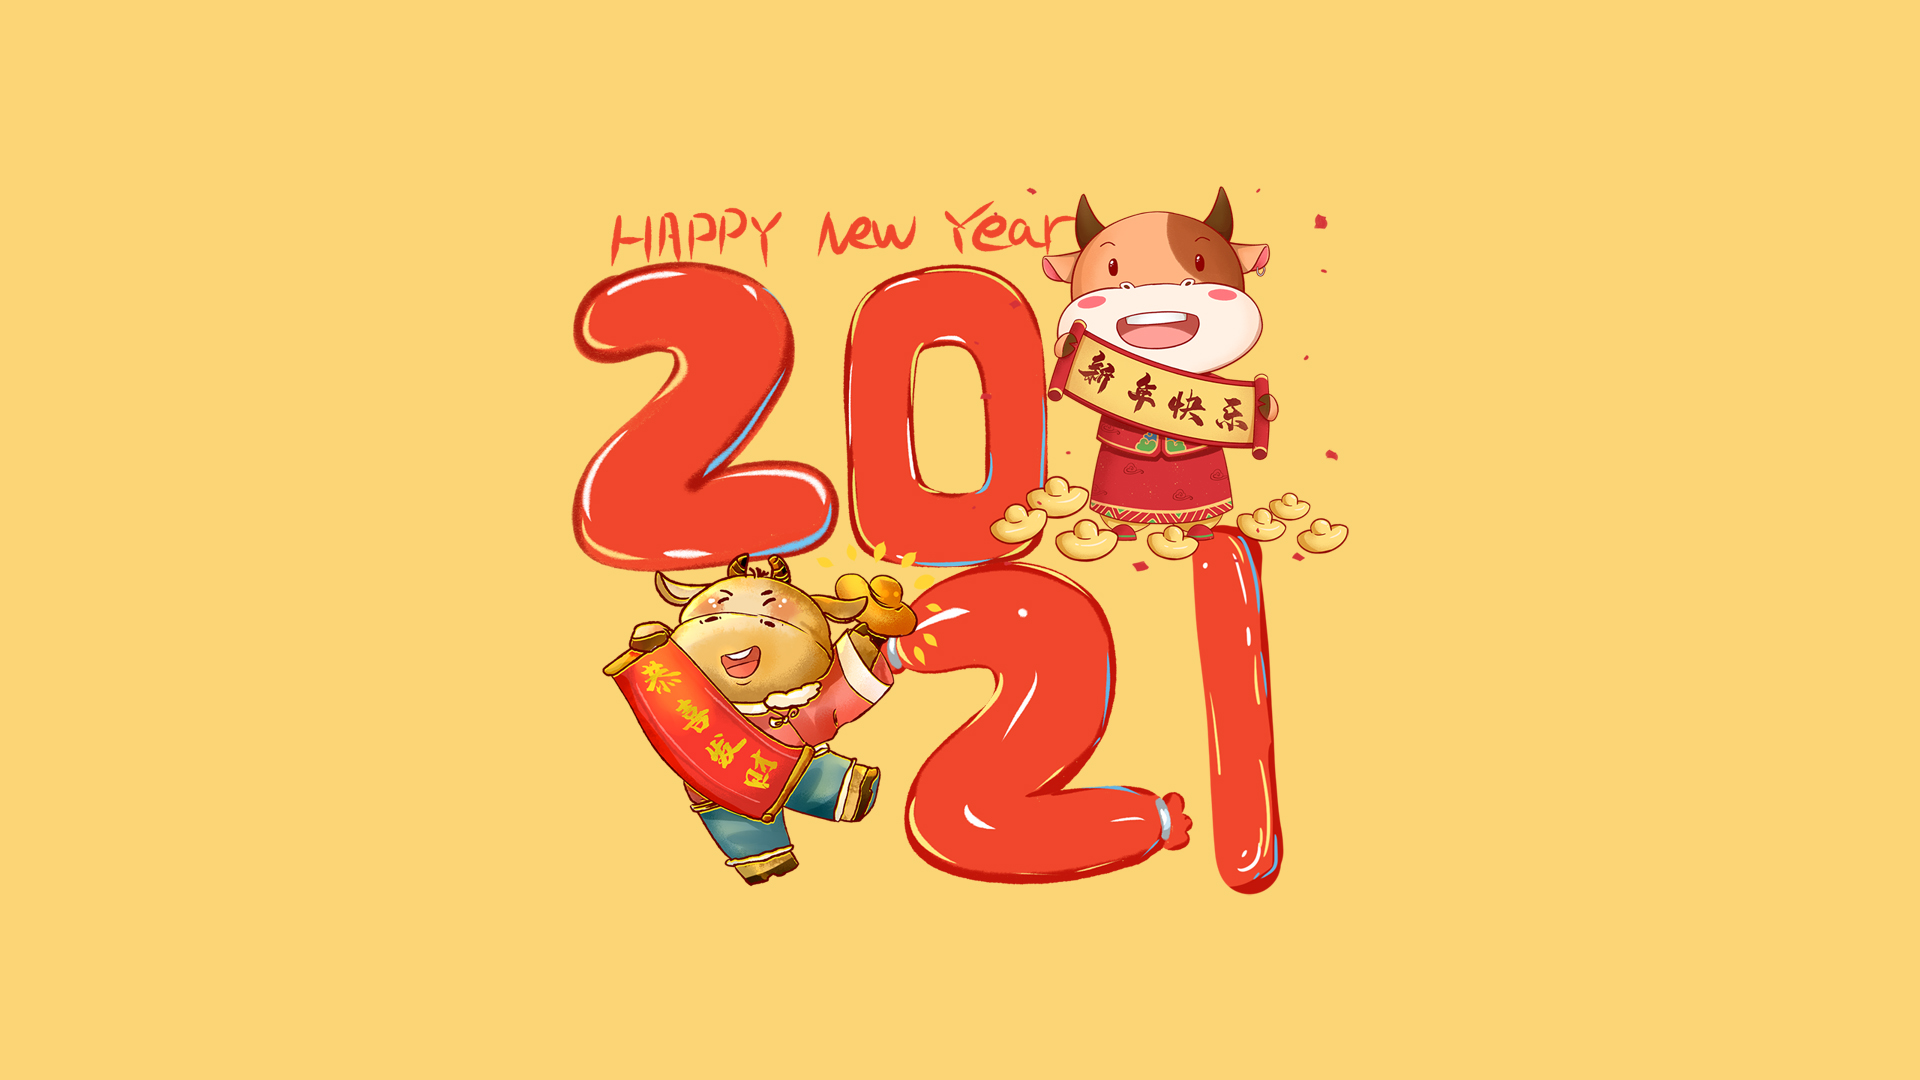 手拿新年快乐和恭喜发财对联的 可爱卡通牛壁纸图片 2021文字